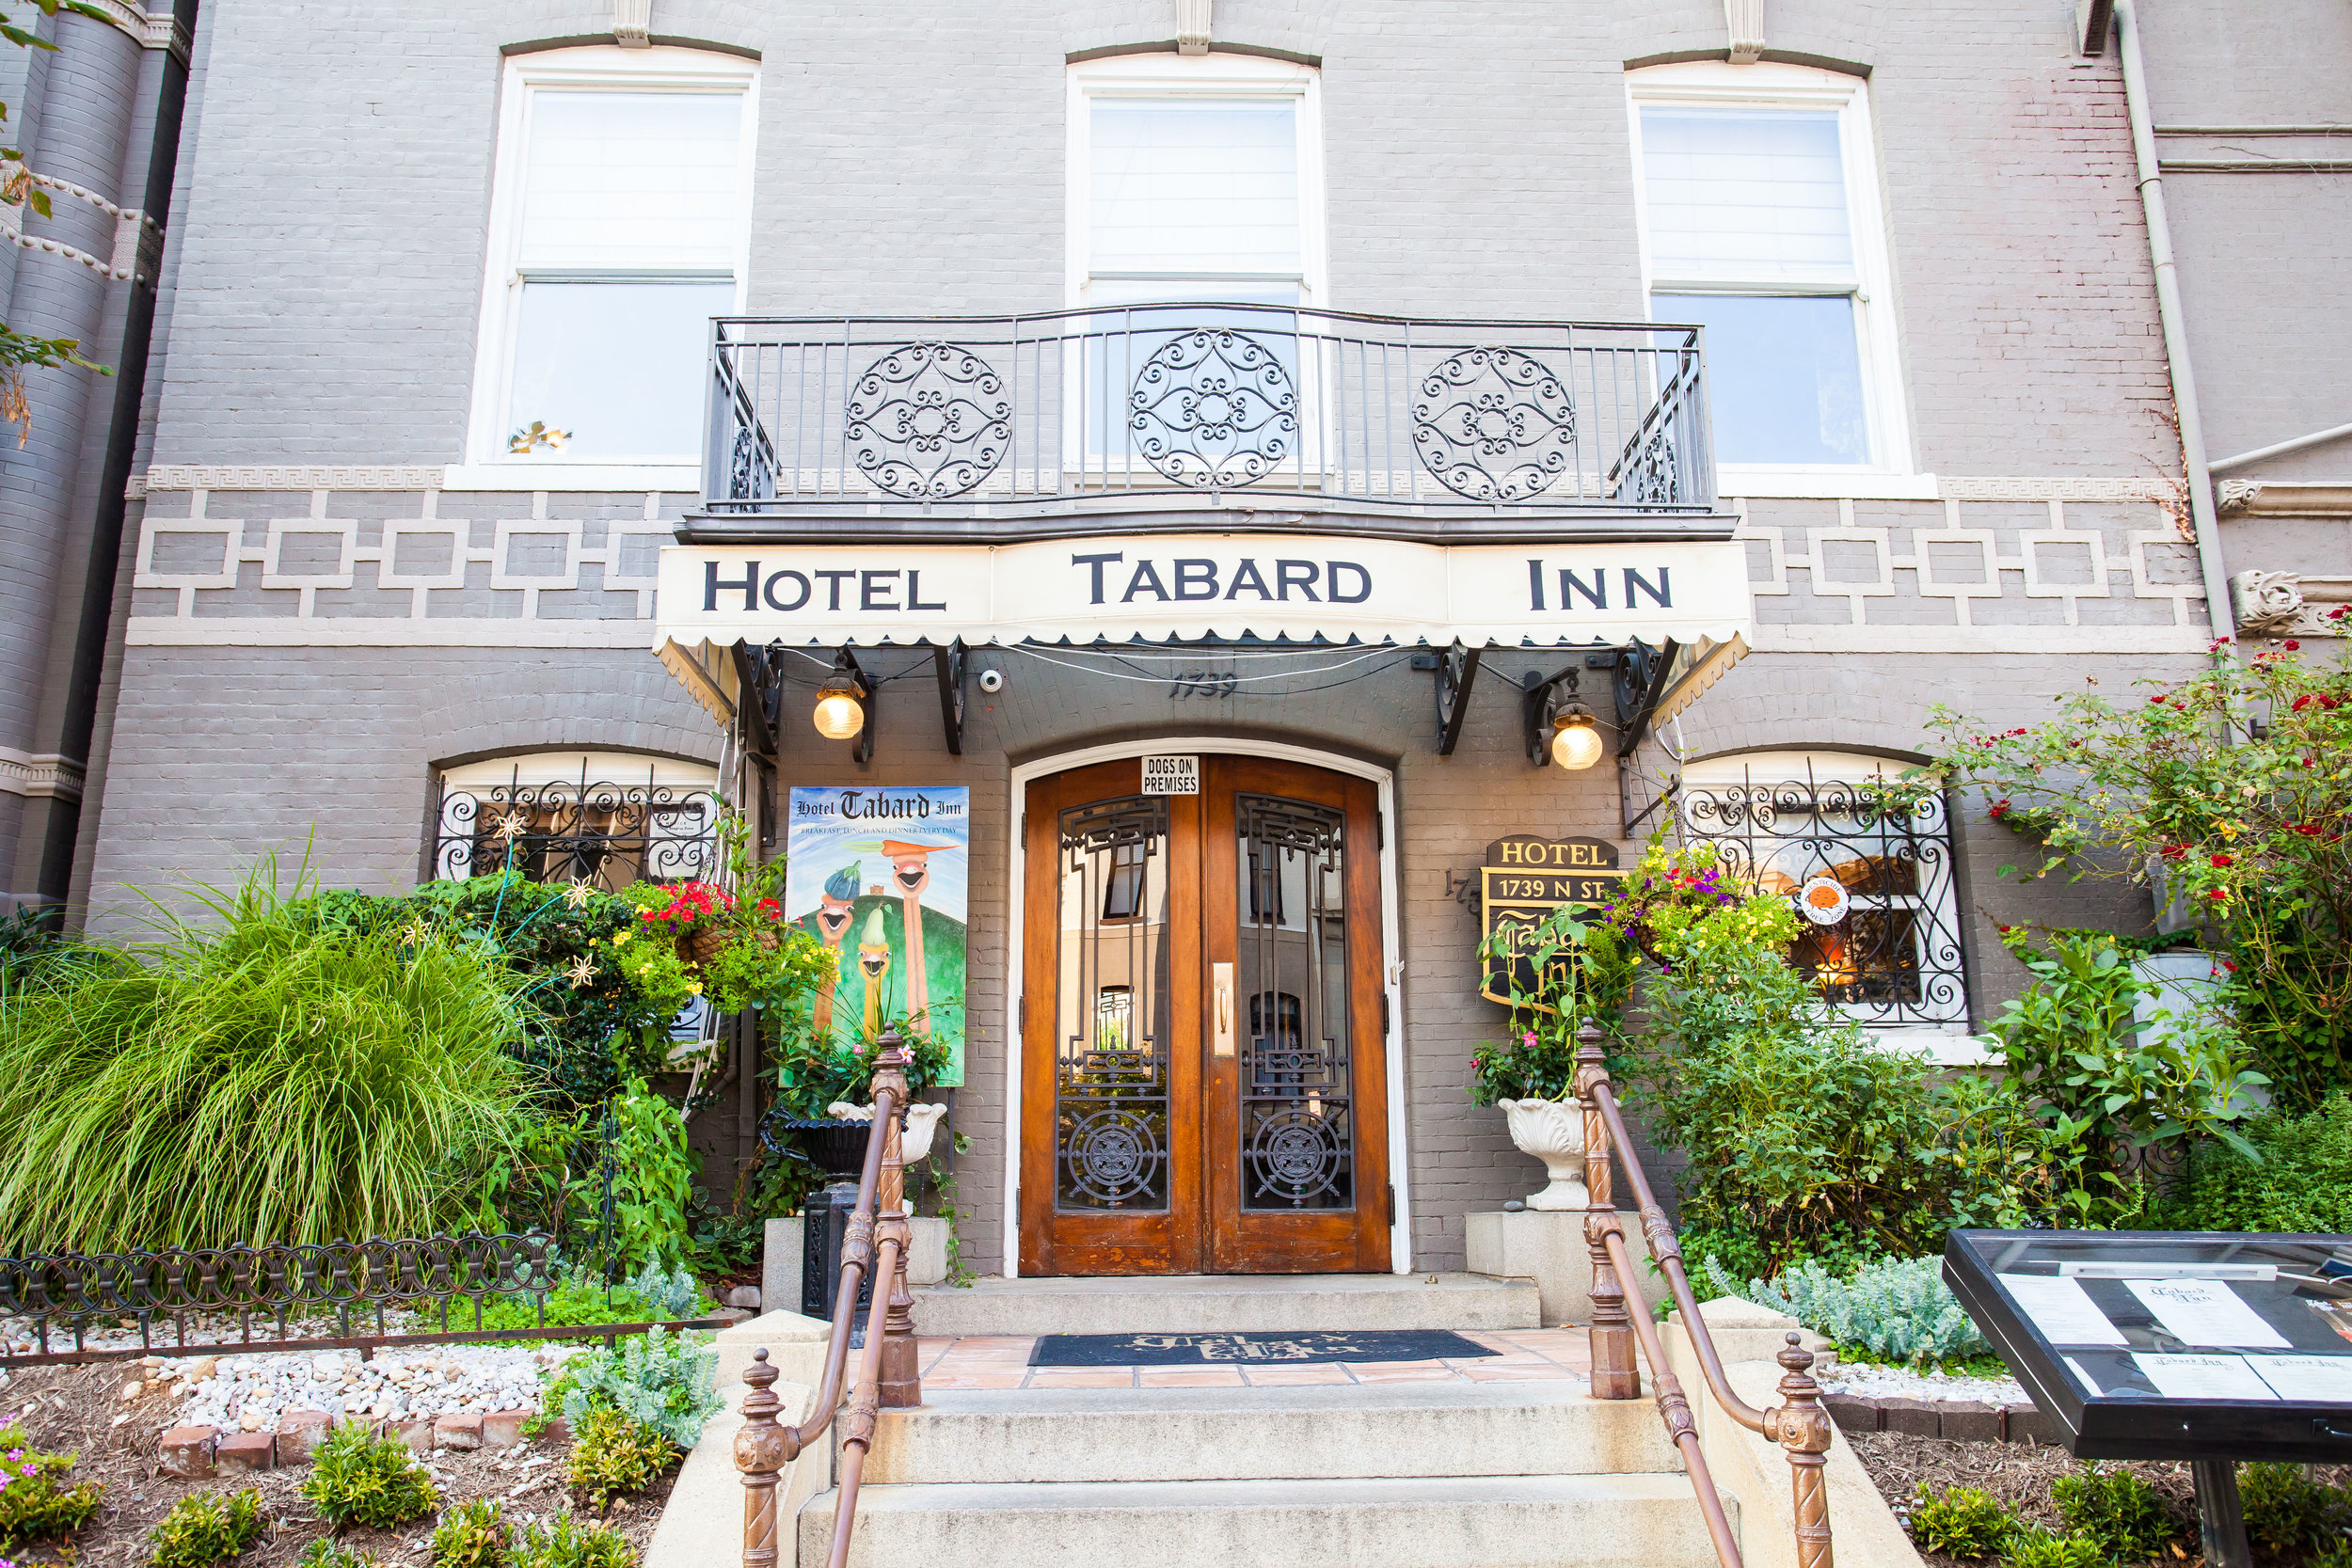 Tabard Inn Reception (Mary Jacob & Mark) - 031.jpg